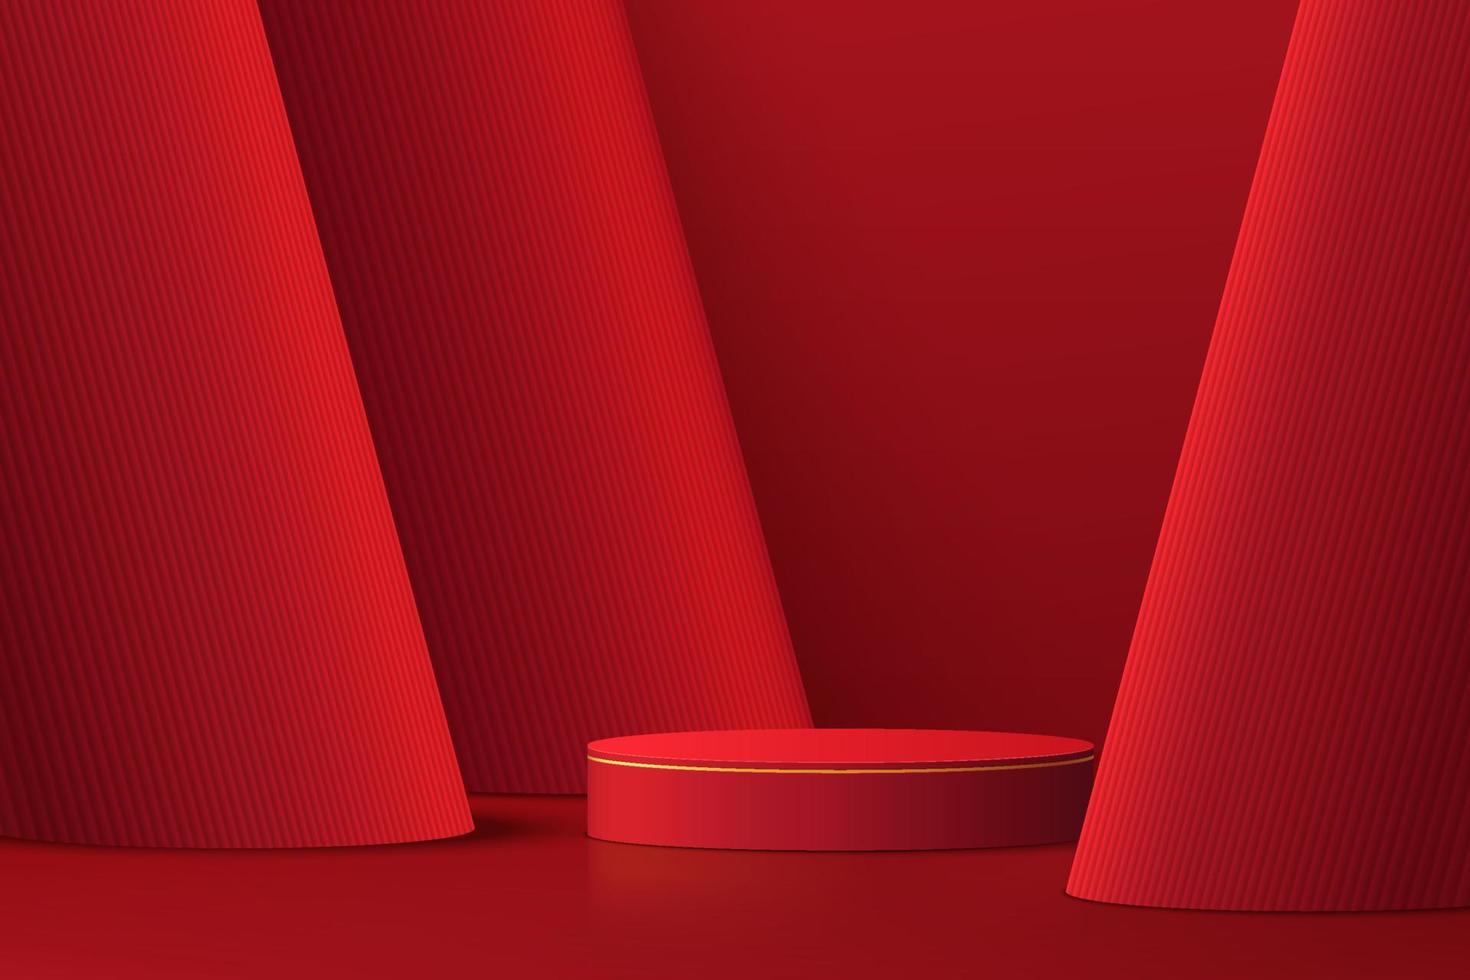 Pódio de pedestal de cilindro 3d vermelho escuro realista com fundo de camadas de pilares vermelhos. cena mínima para vitrine de produtos, exibição de promoção. plataforma de sala de estúdio abstrato. conceito de dia da lanterna feliz. vetor